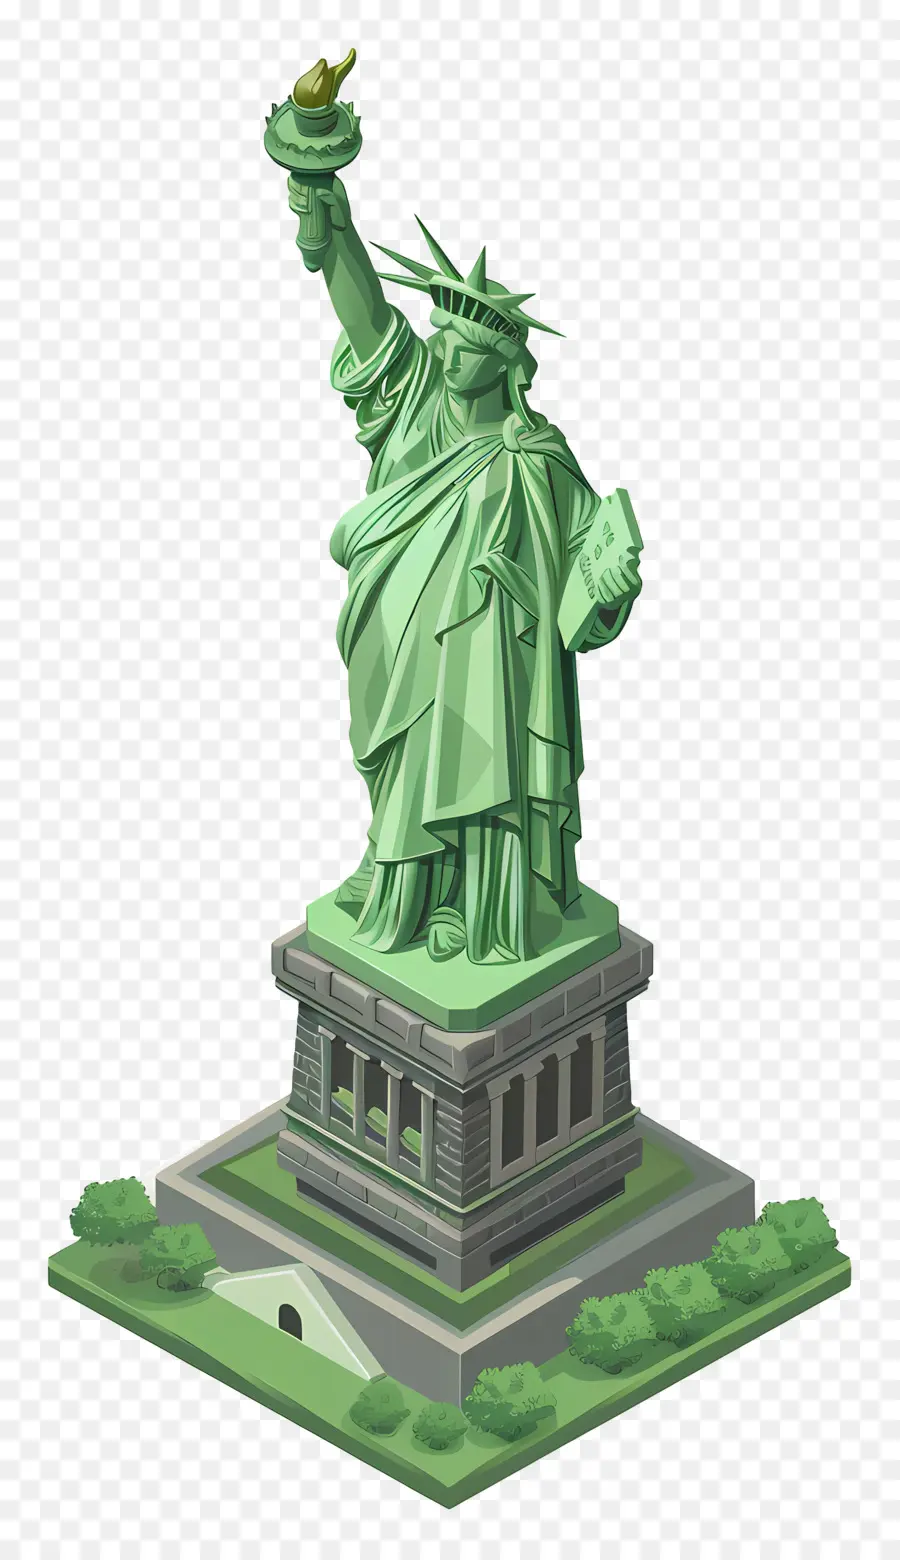 statua della libertà - Illustrazione verde 3d statua della libertà